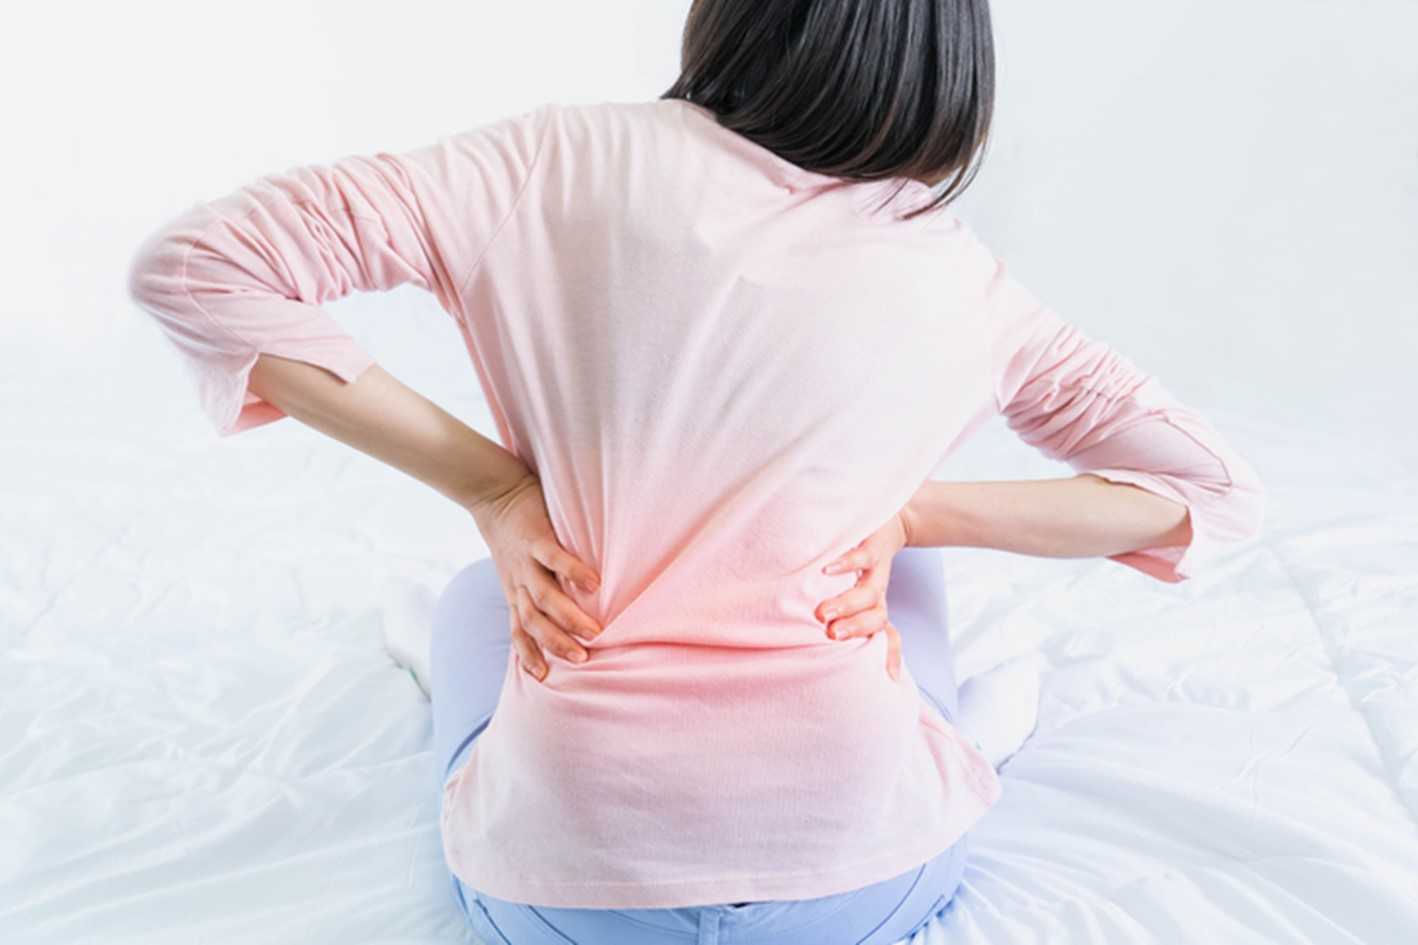 Ejercicios que debemos evitar para aliviar el dolor de espalda